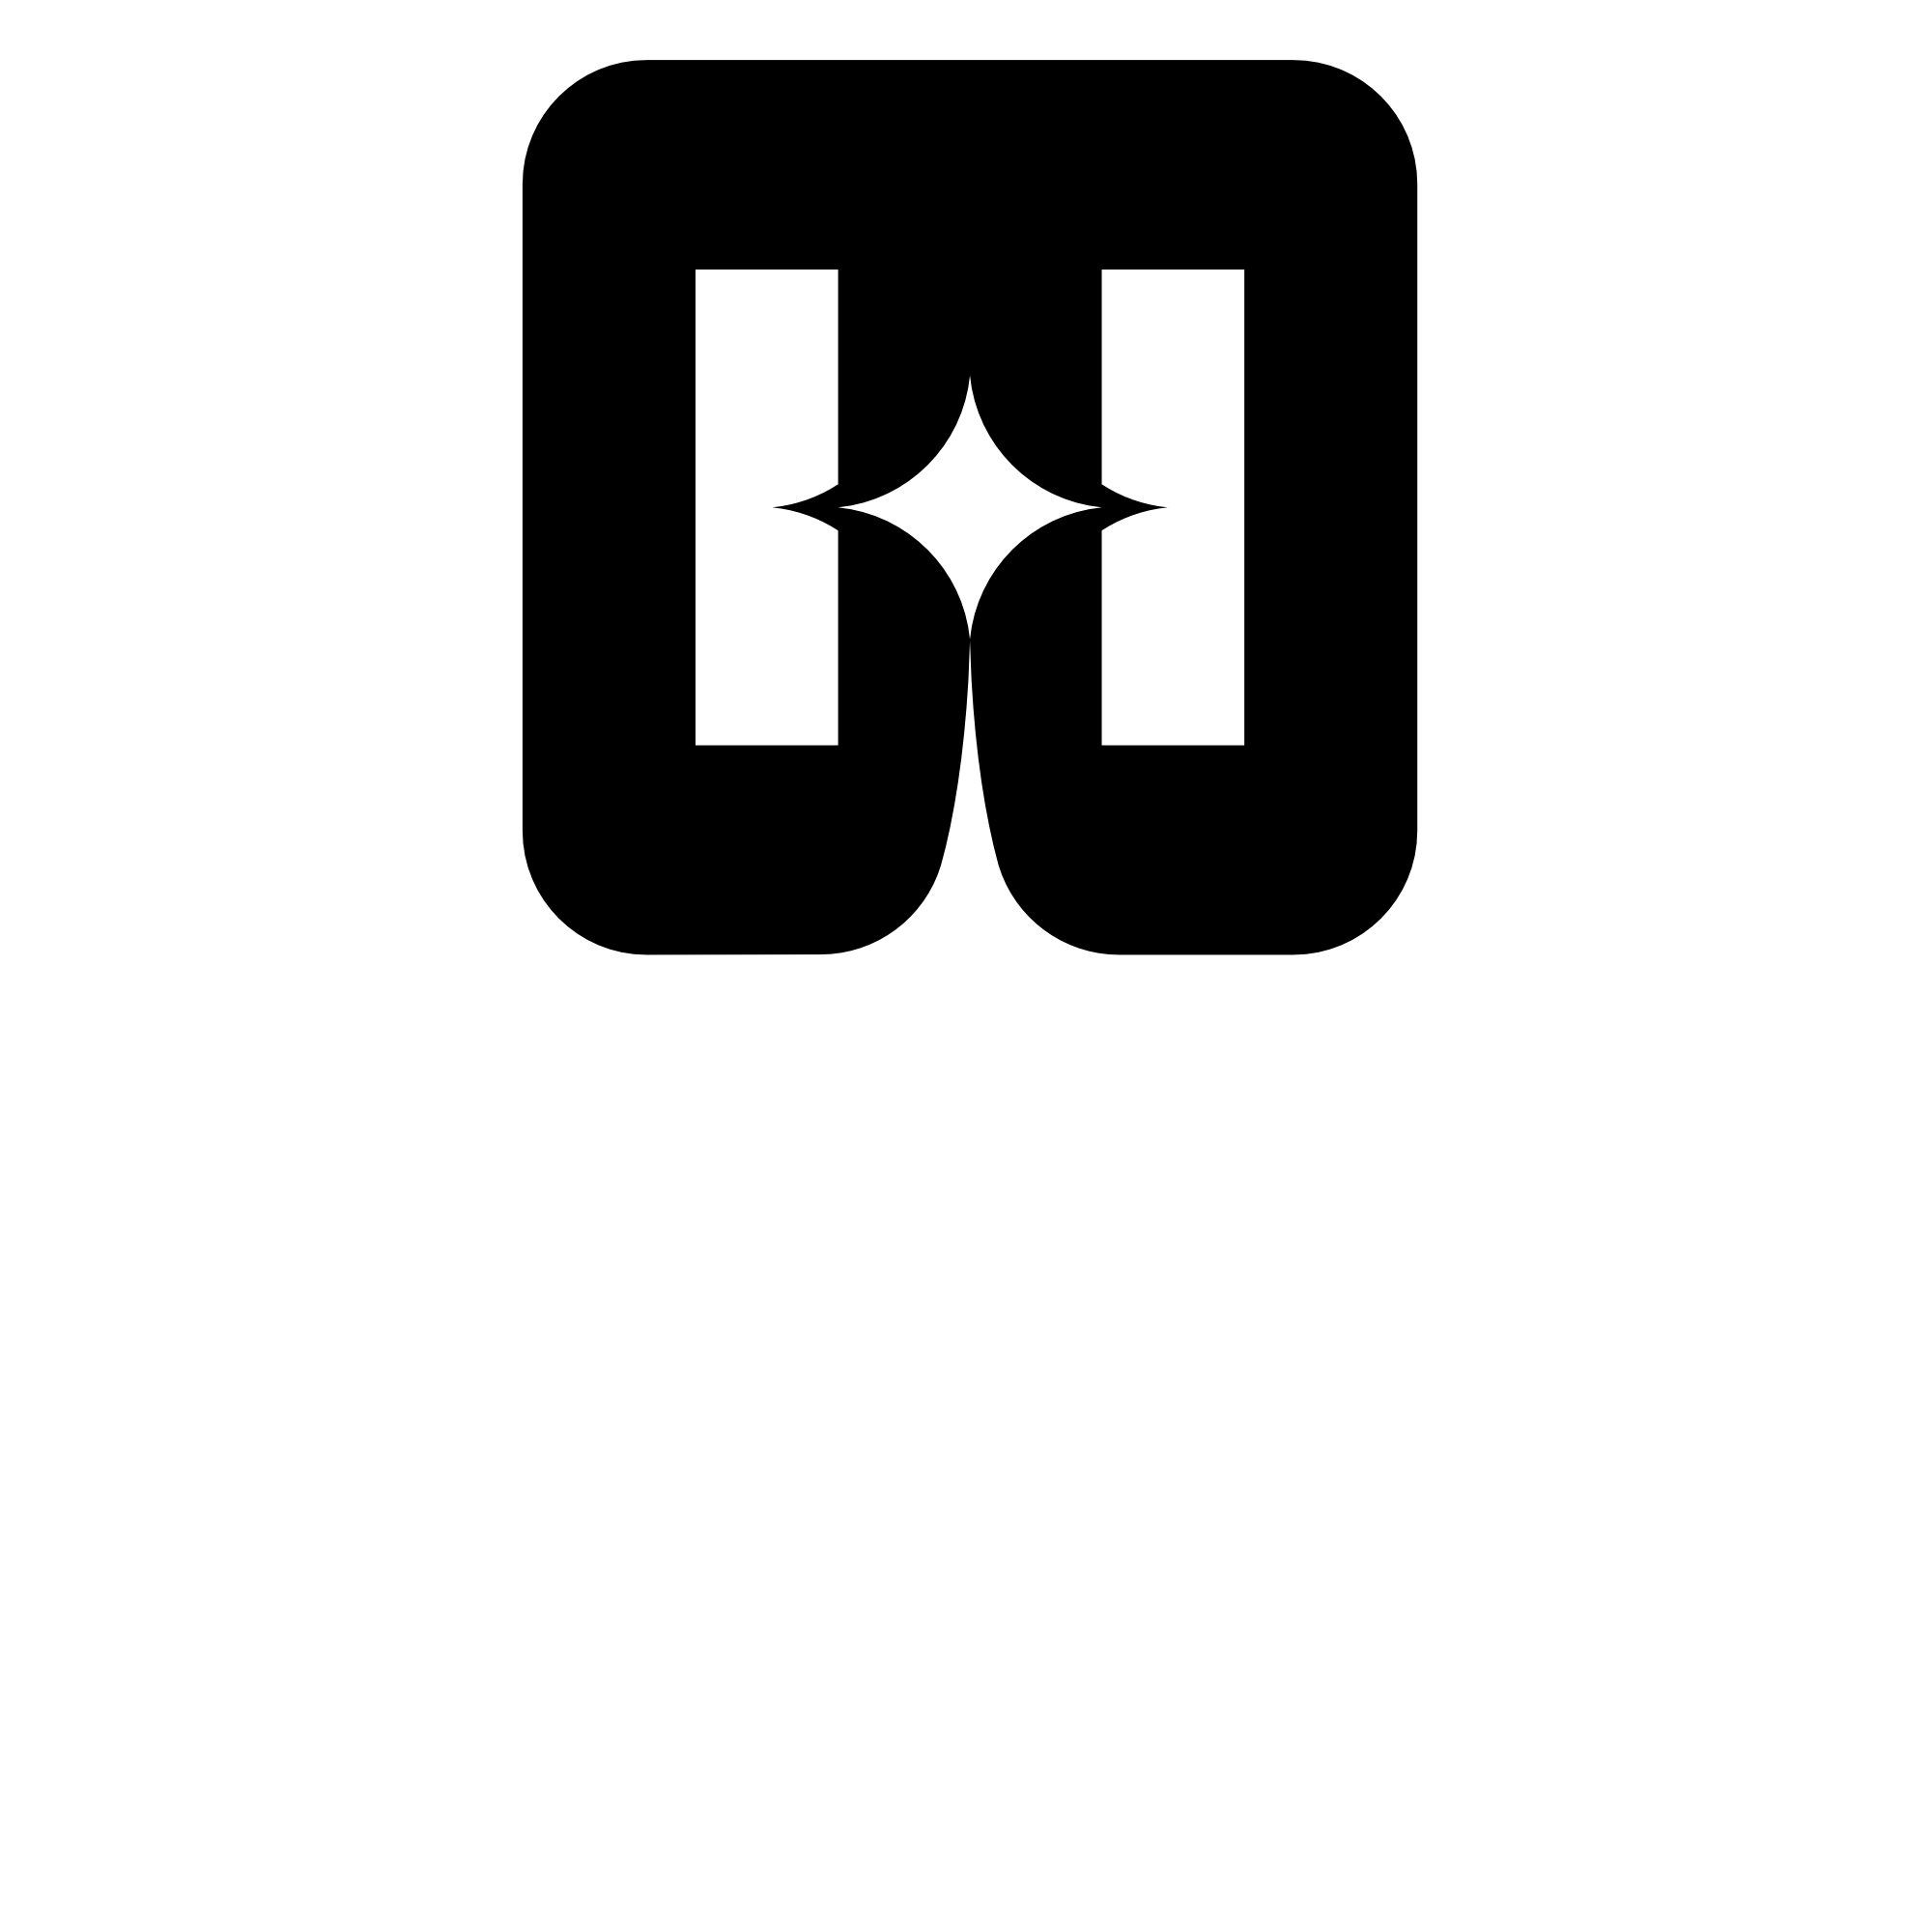 Hubble: Centralize your political campaign